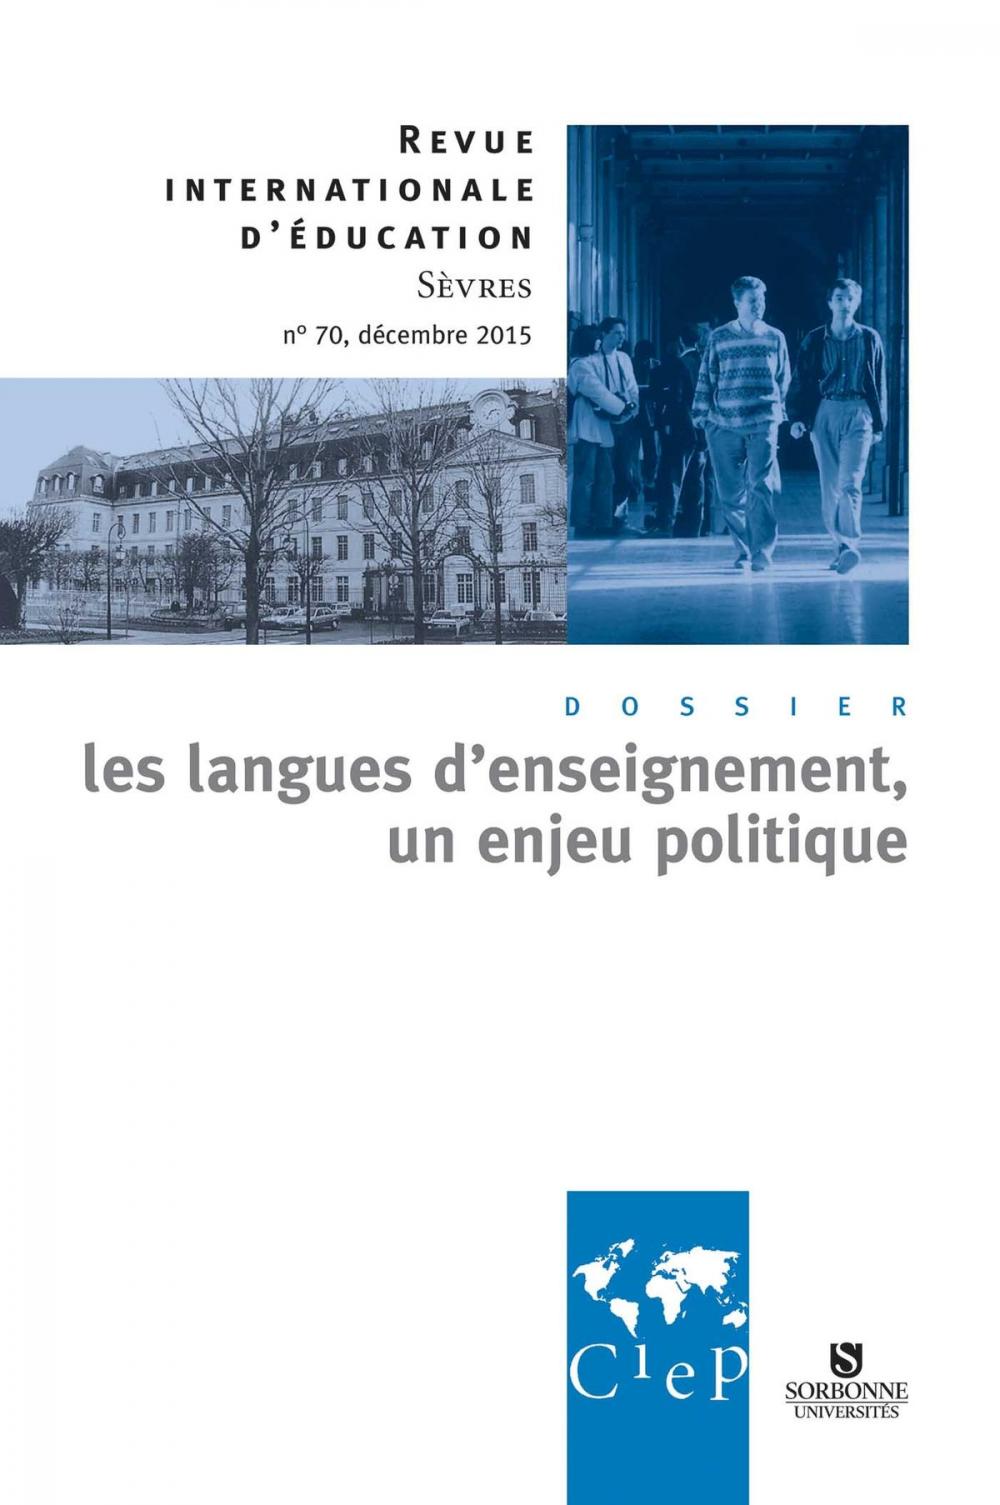 Big bigCover of Les langues d'enseignement, un enjeu politique - Revue internationale d'éducation Sèvres 70 - Ebook